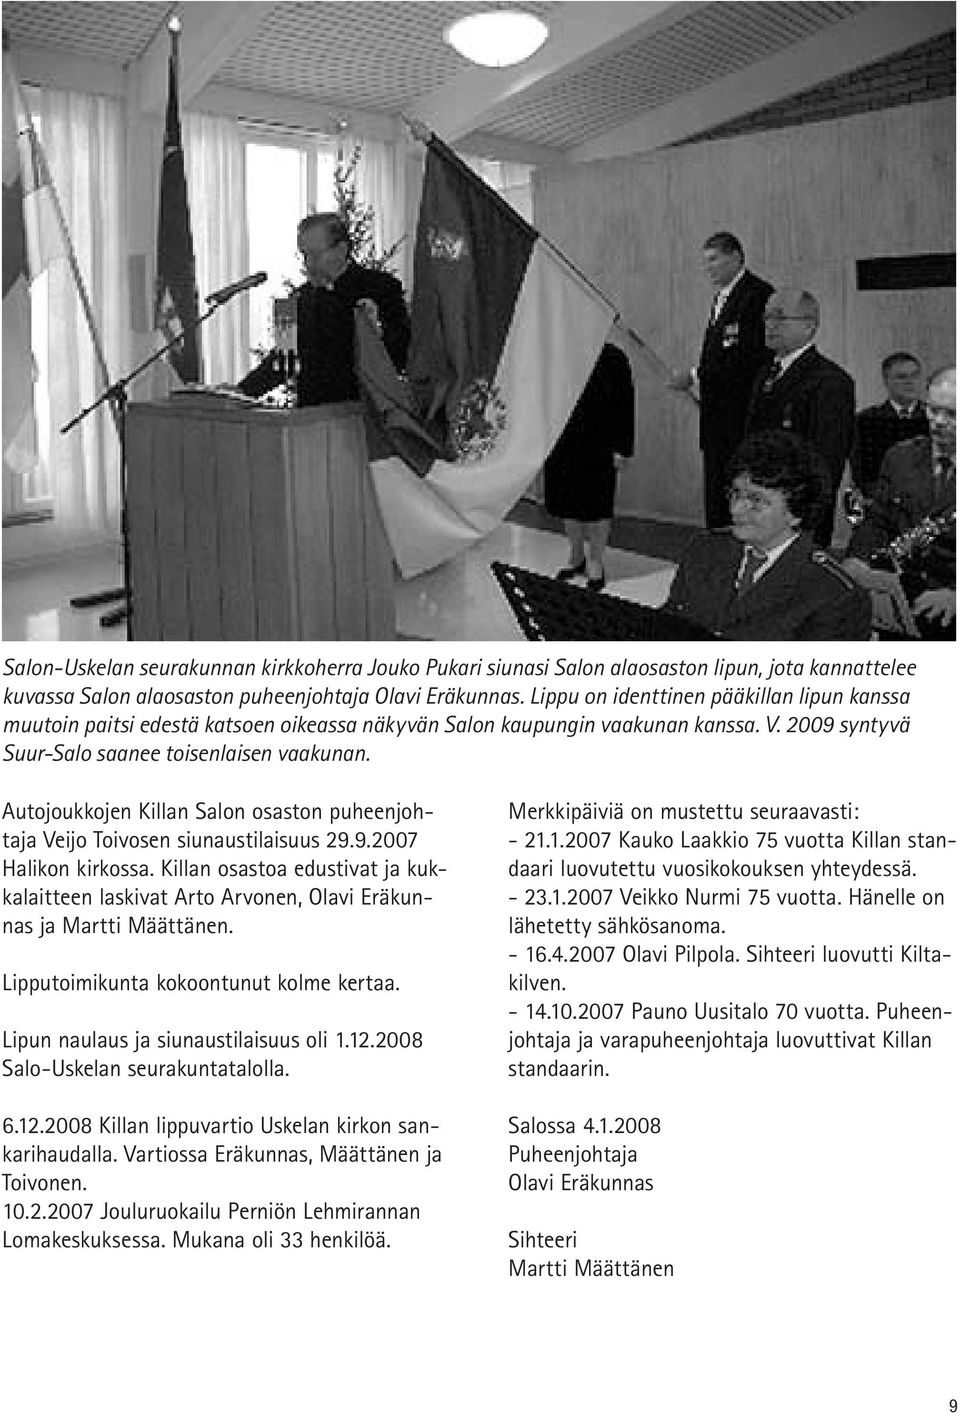 Autojoukkojen Killan Salon osaston puheenjohtaja Veijo Toivosen siunaustilaisuus 29.9.2007 Halikon kirkossa.